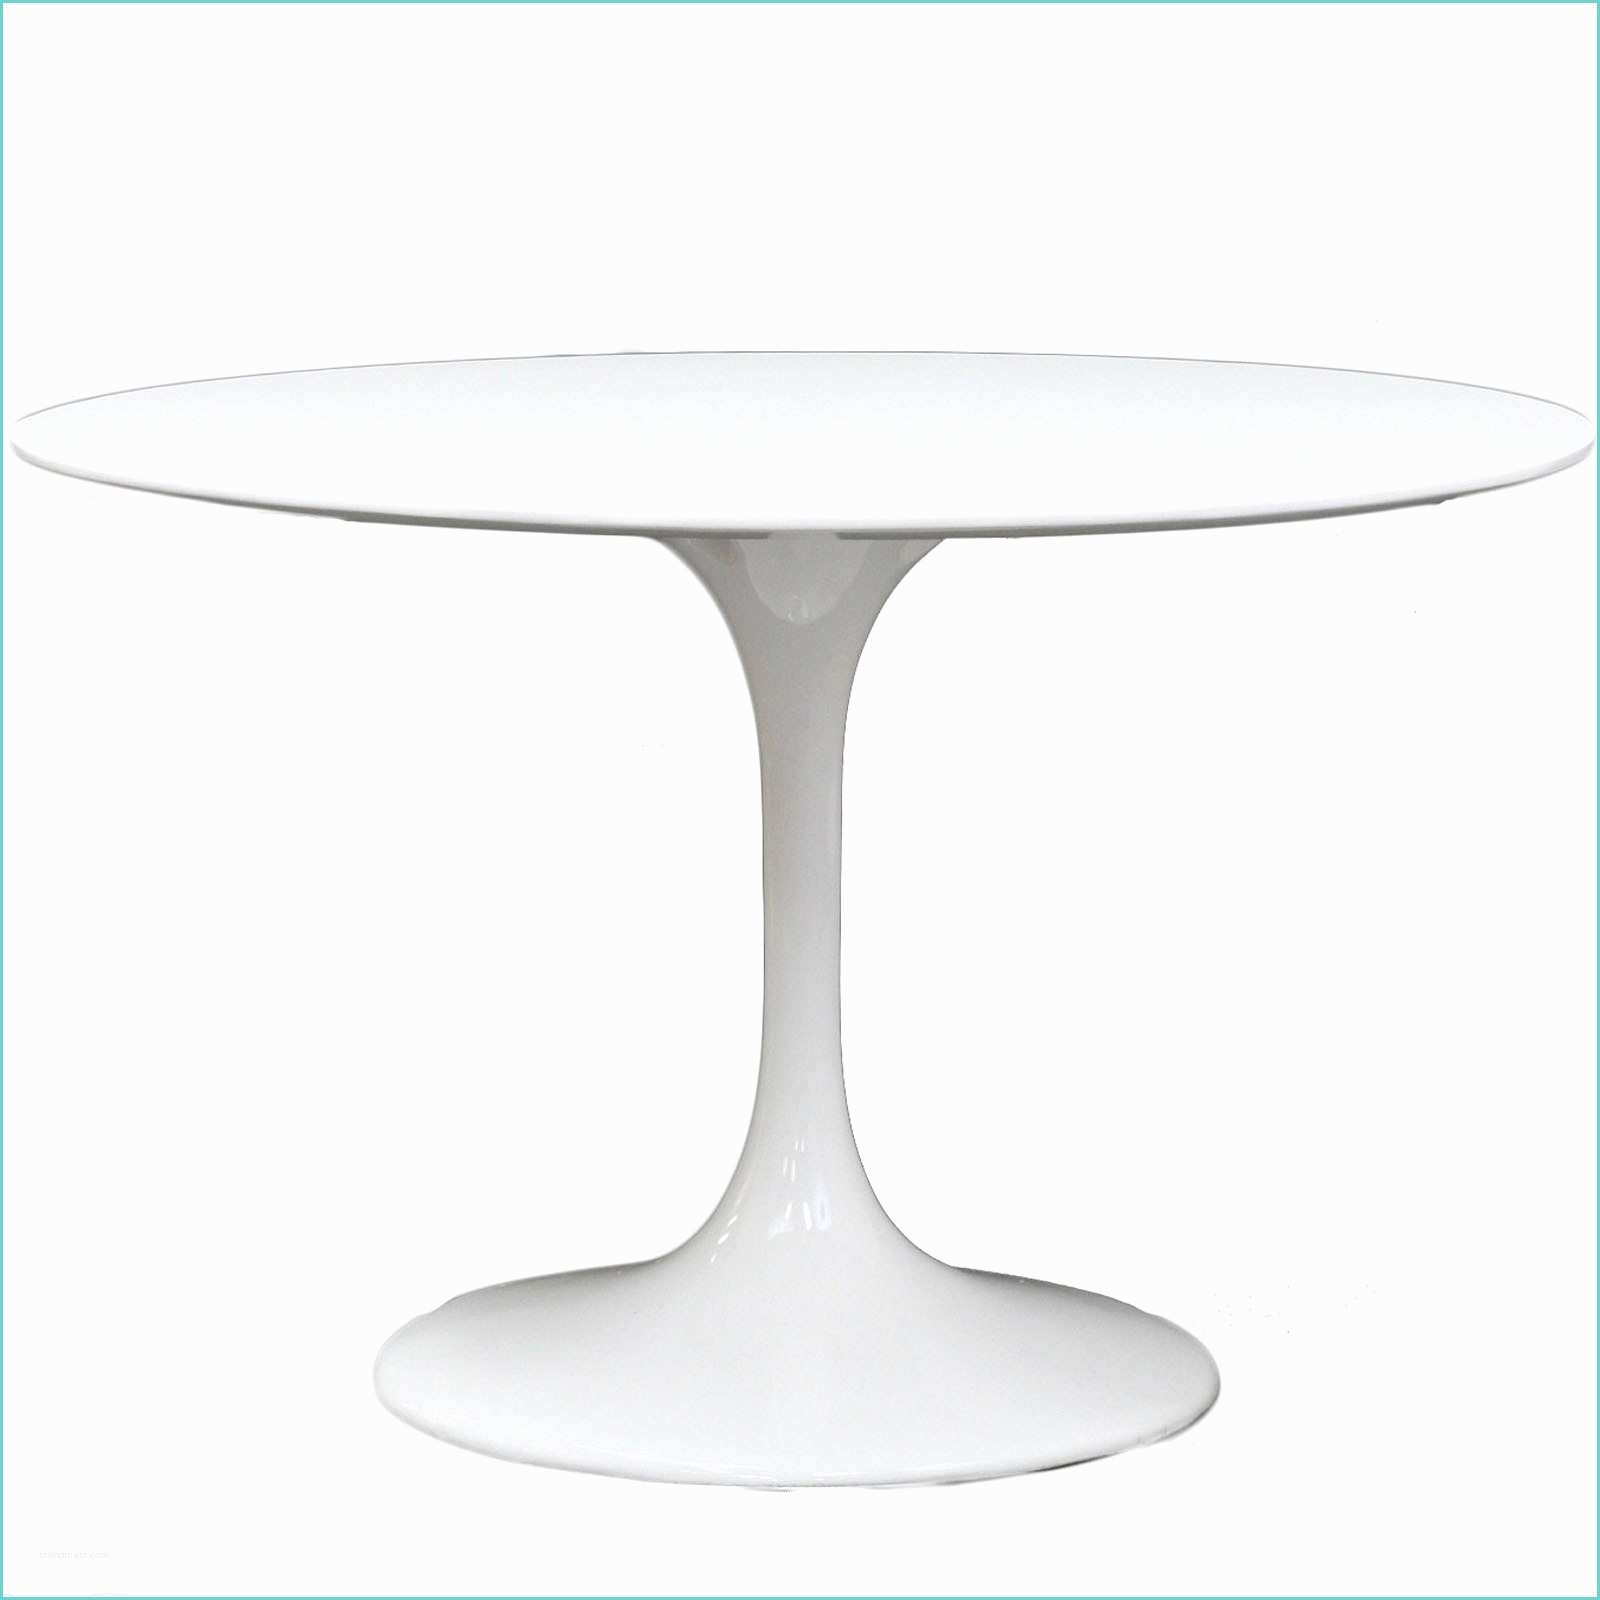 White Tulip Side Table Eero Saarinen Style Tulip Table Fiberglass 40"